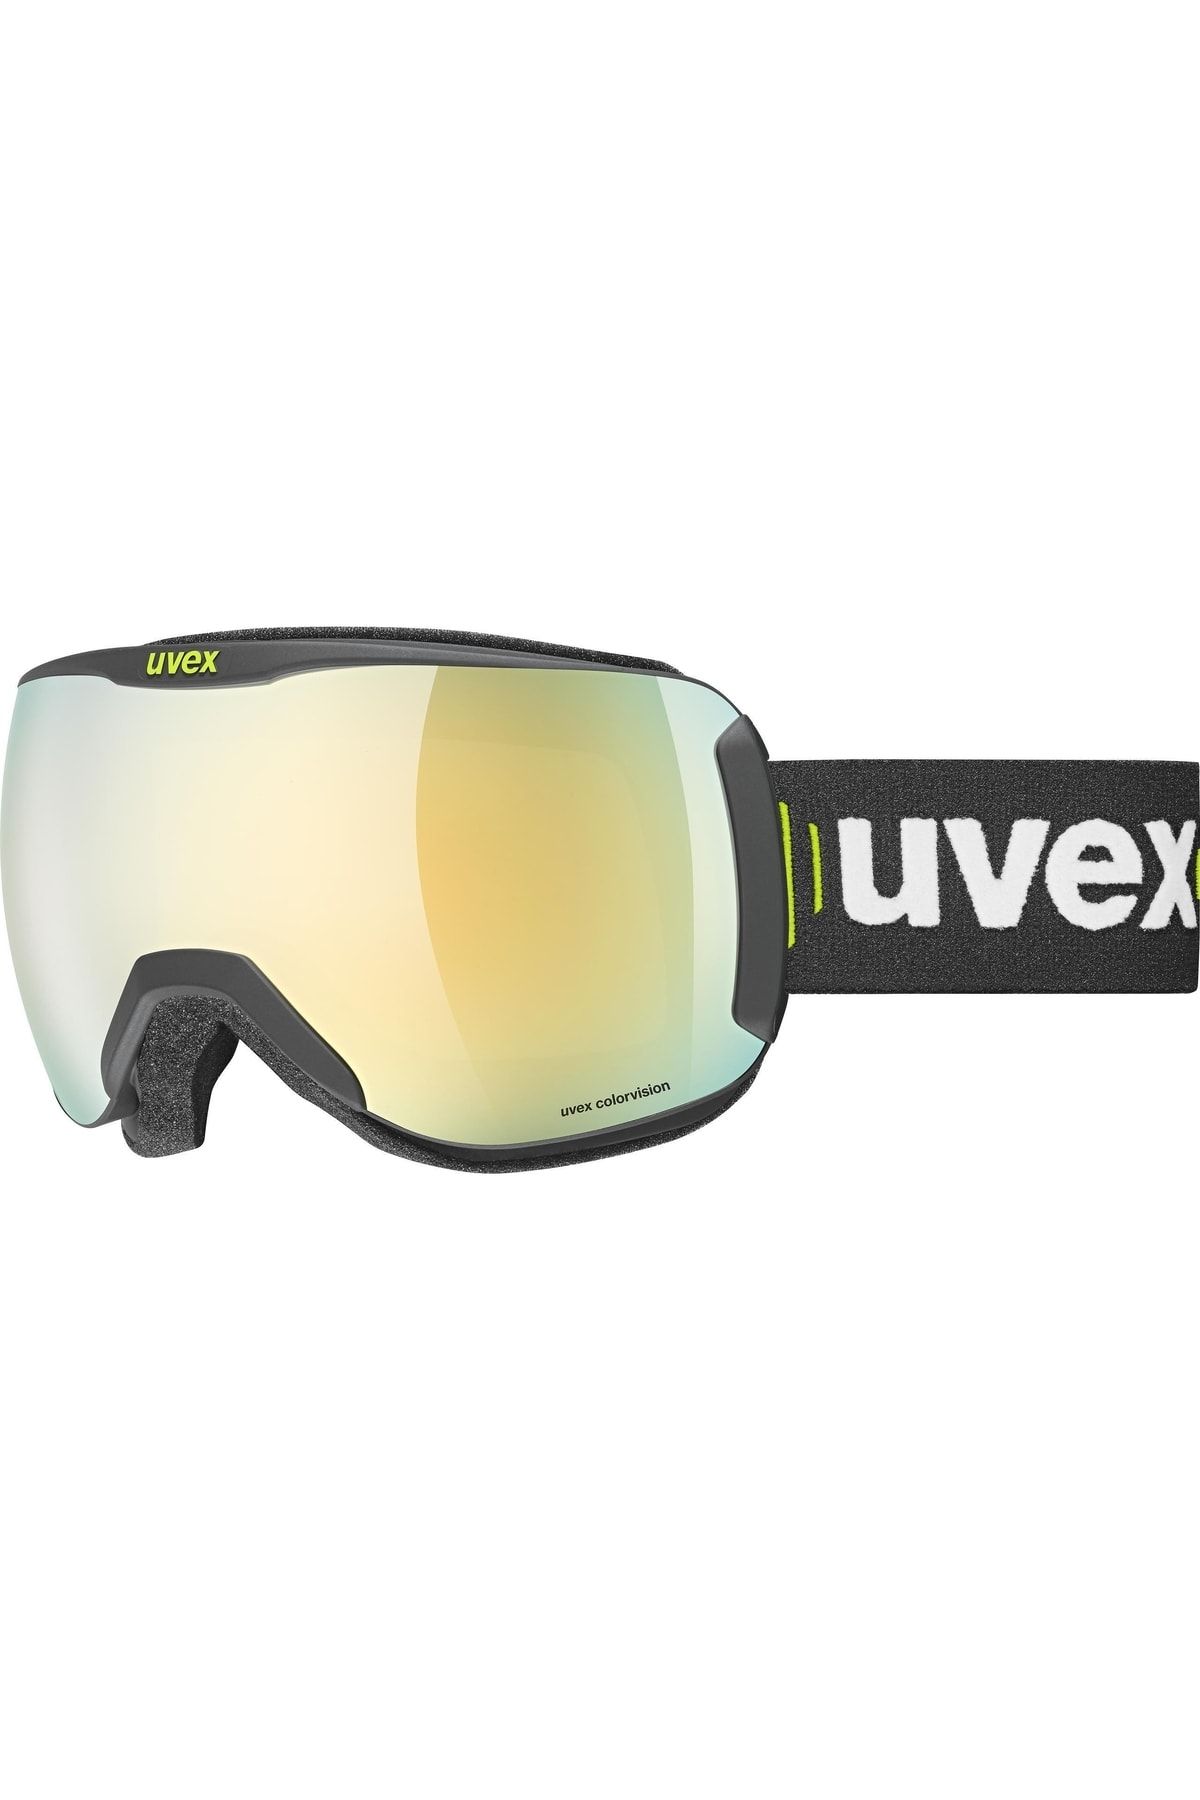 Uvex Downhill 2100 Cv Siyah Mat Altın-yeşil Kayak Gözlüğü